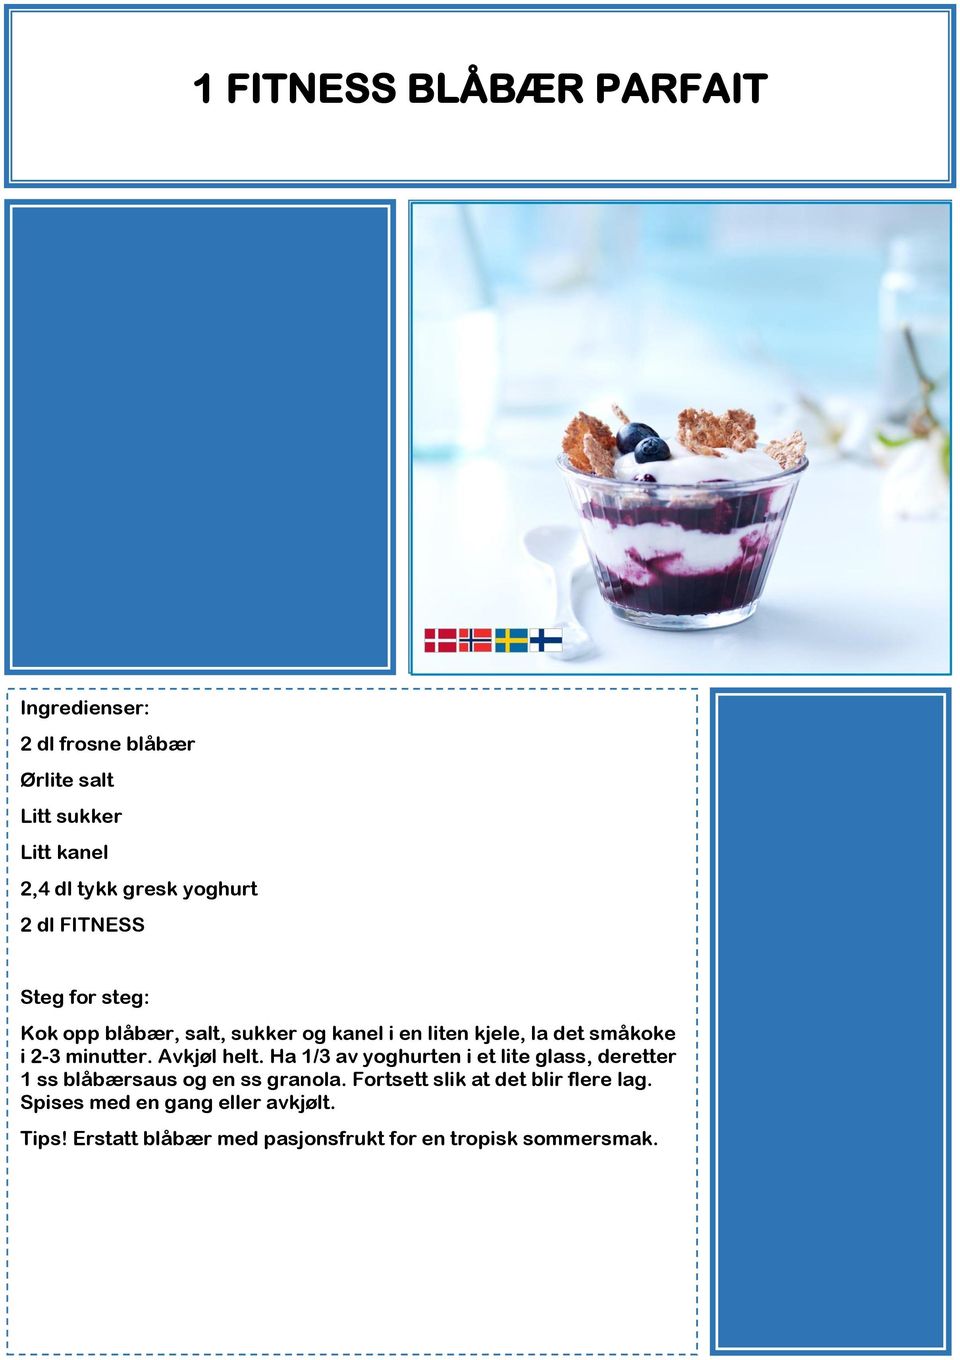 Avkjøl helt. Ha 1/3 av yoghurten i et lite glass, deretter 1 ss blåbærsaus og en ss granola.